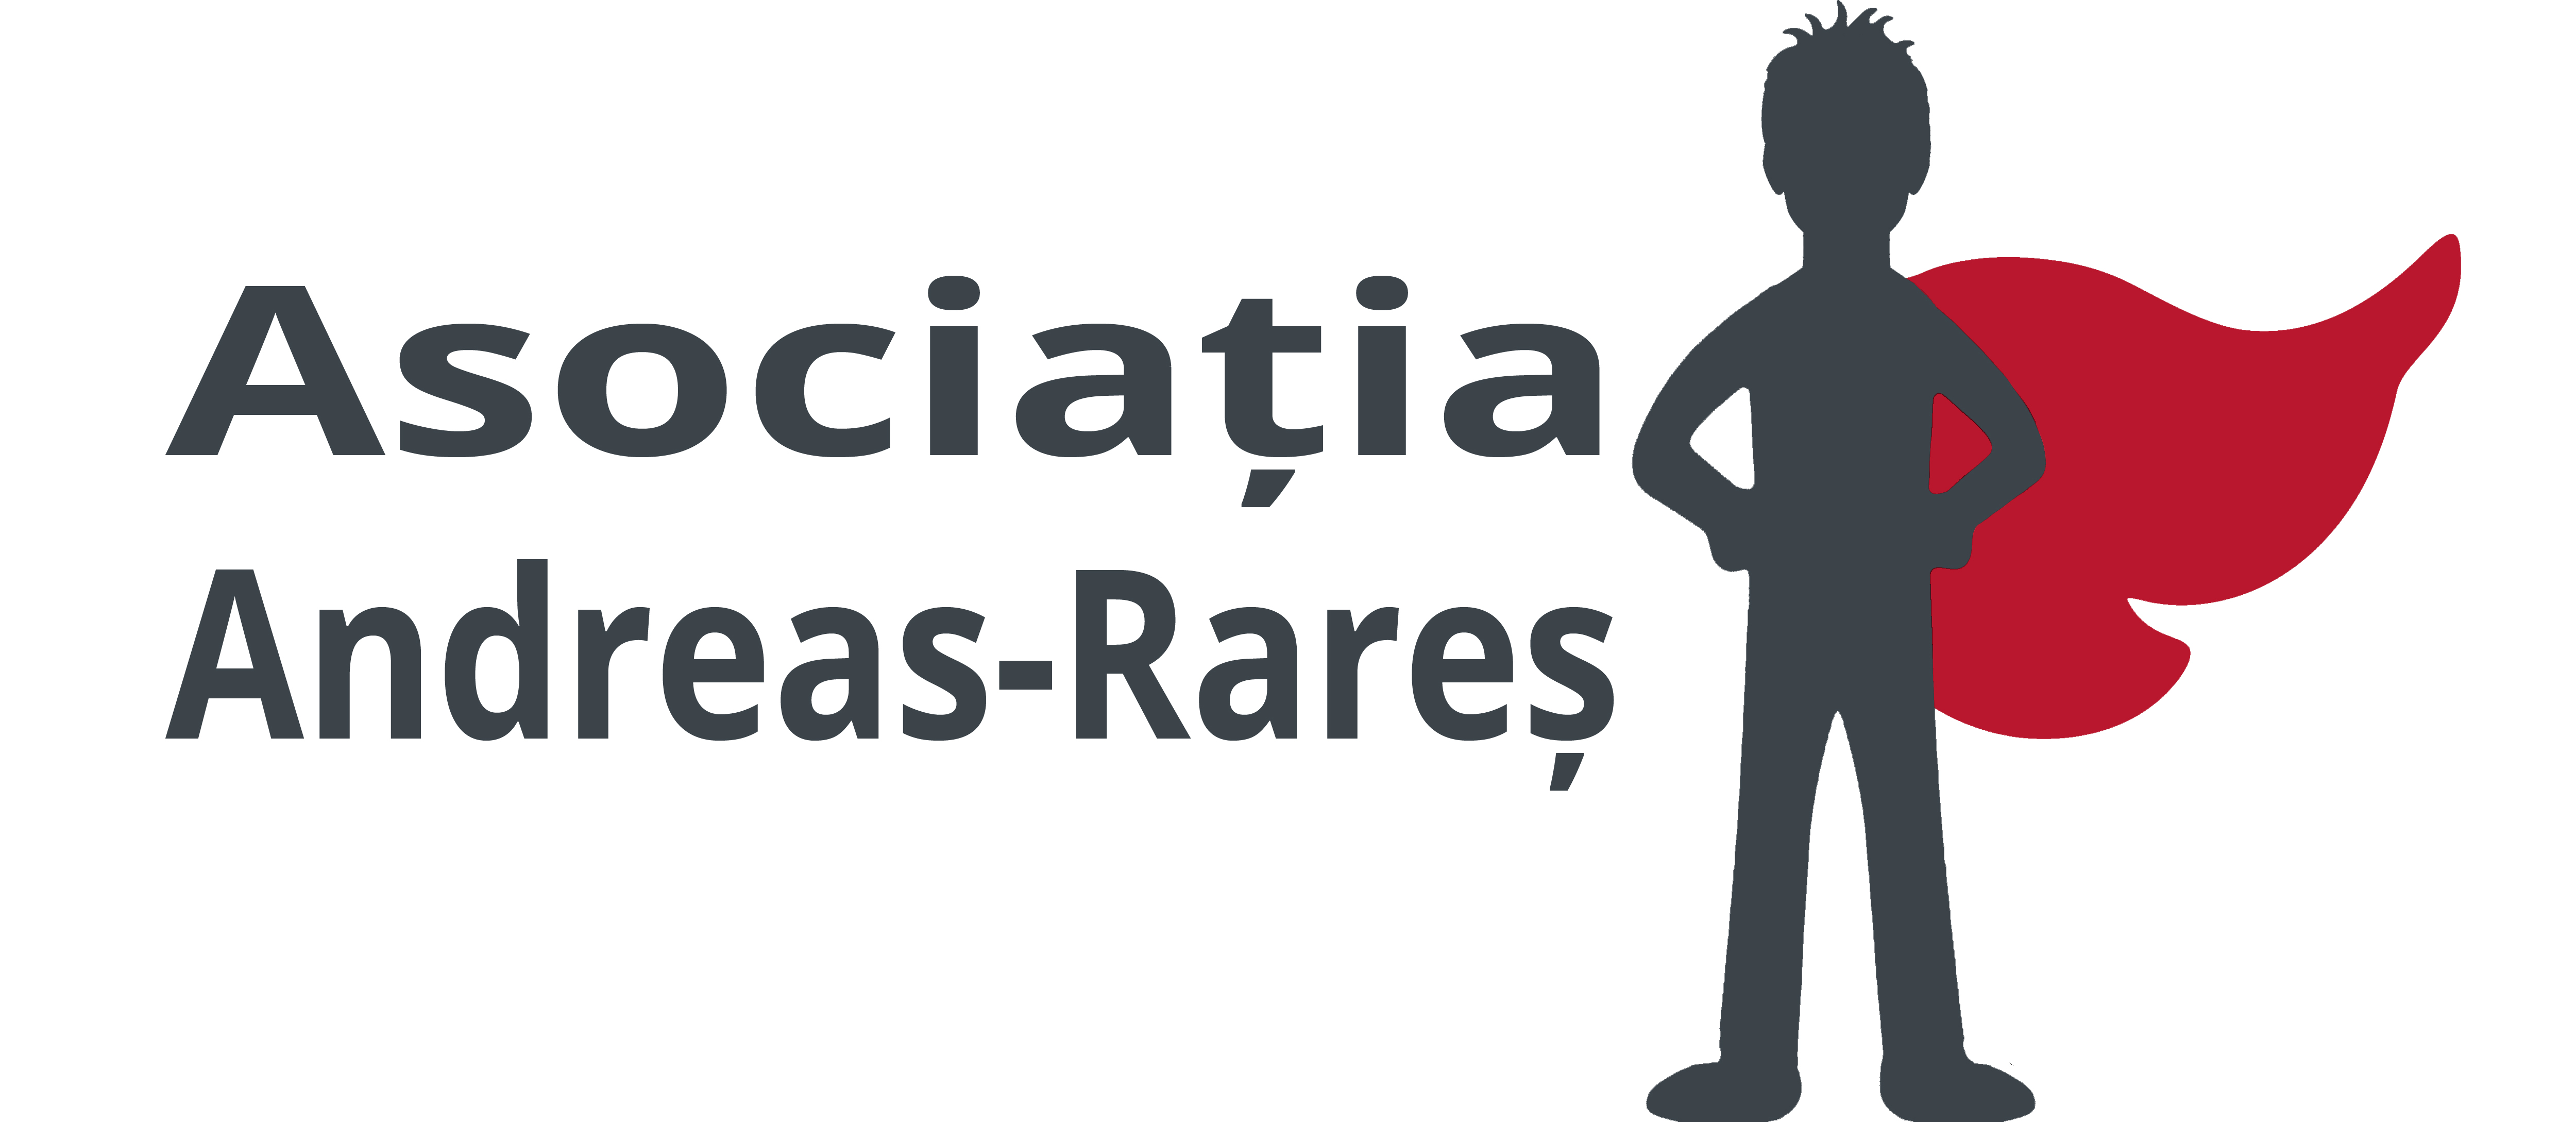 Asociatia Andreas-Rares logo